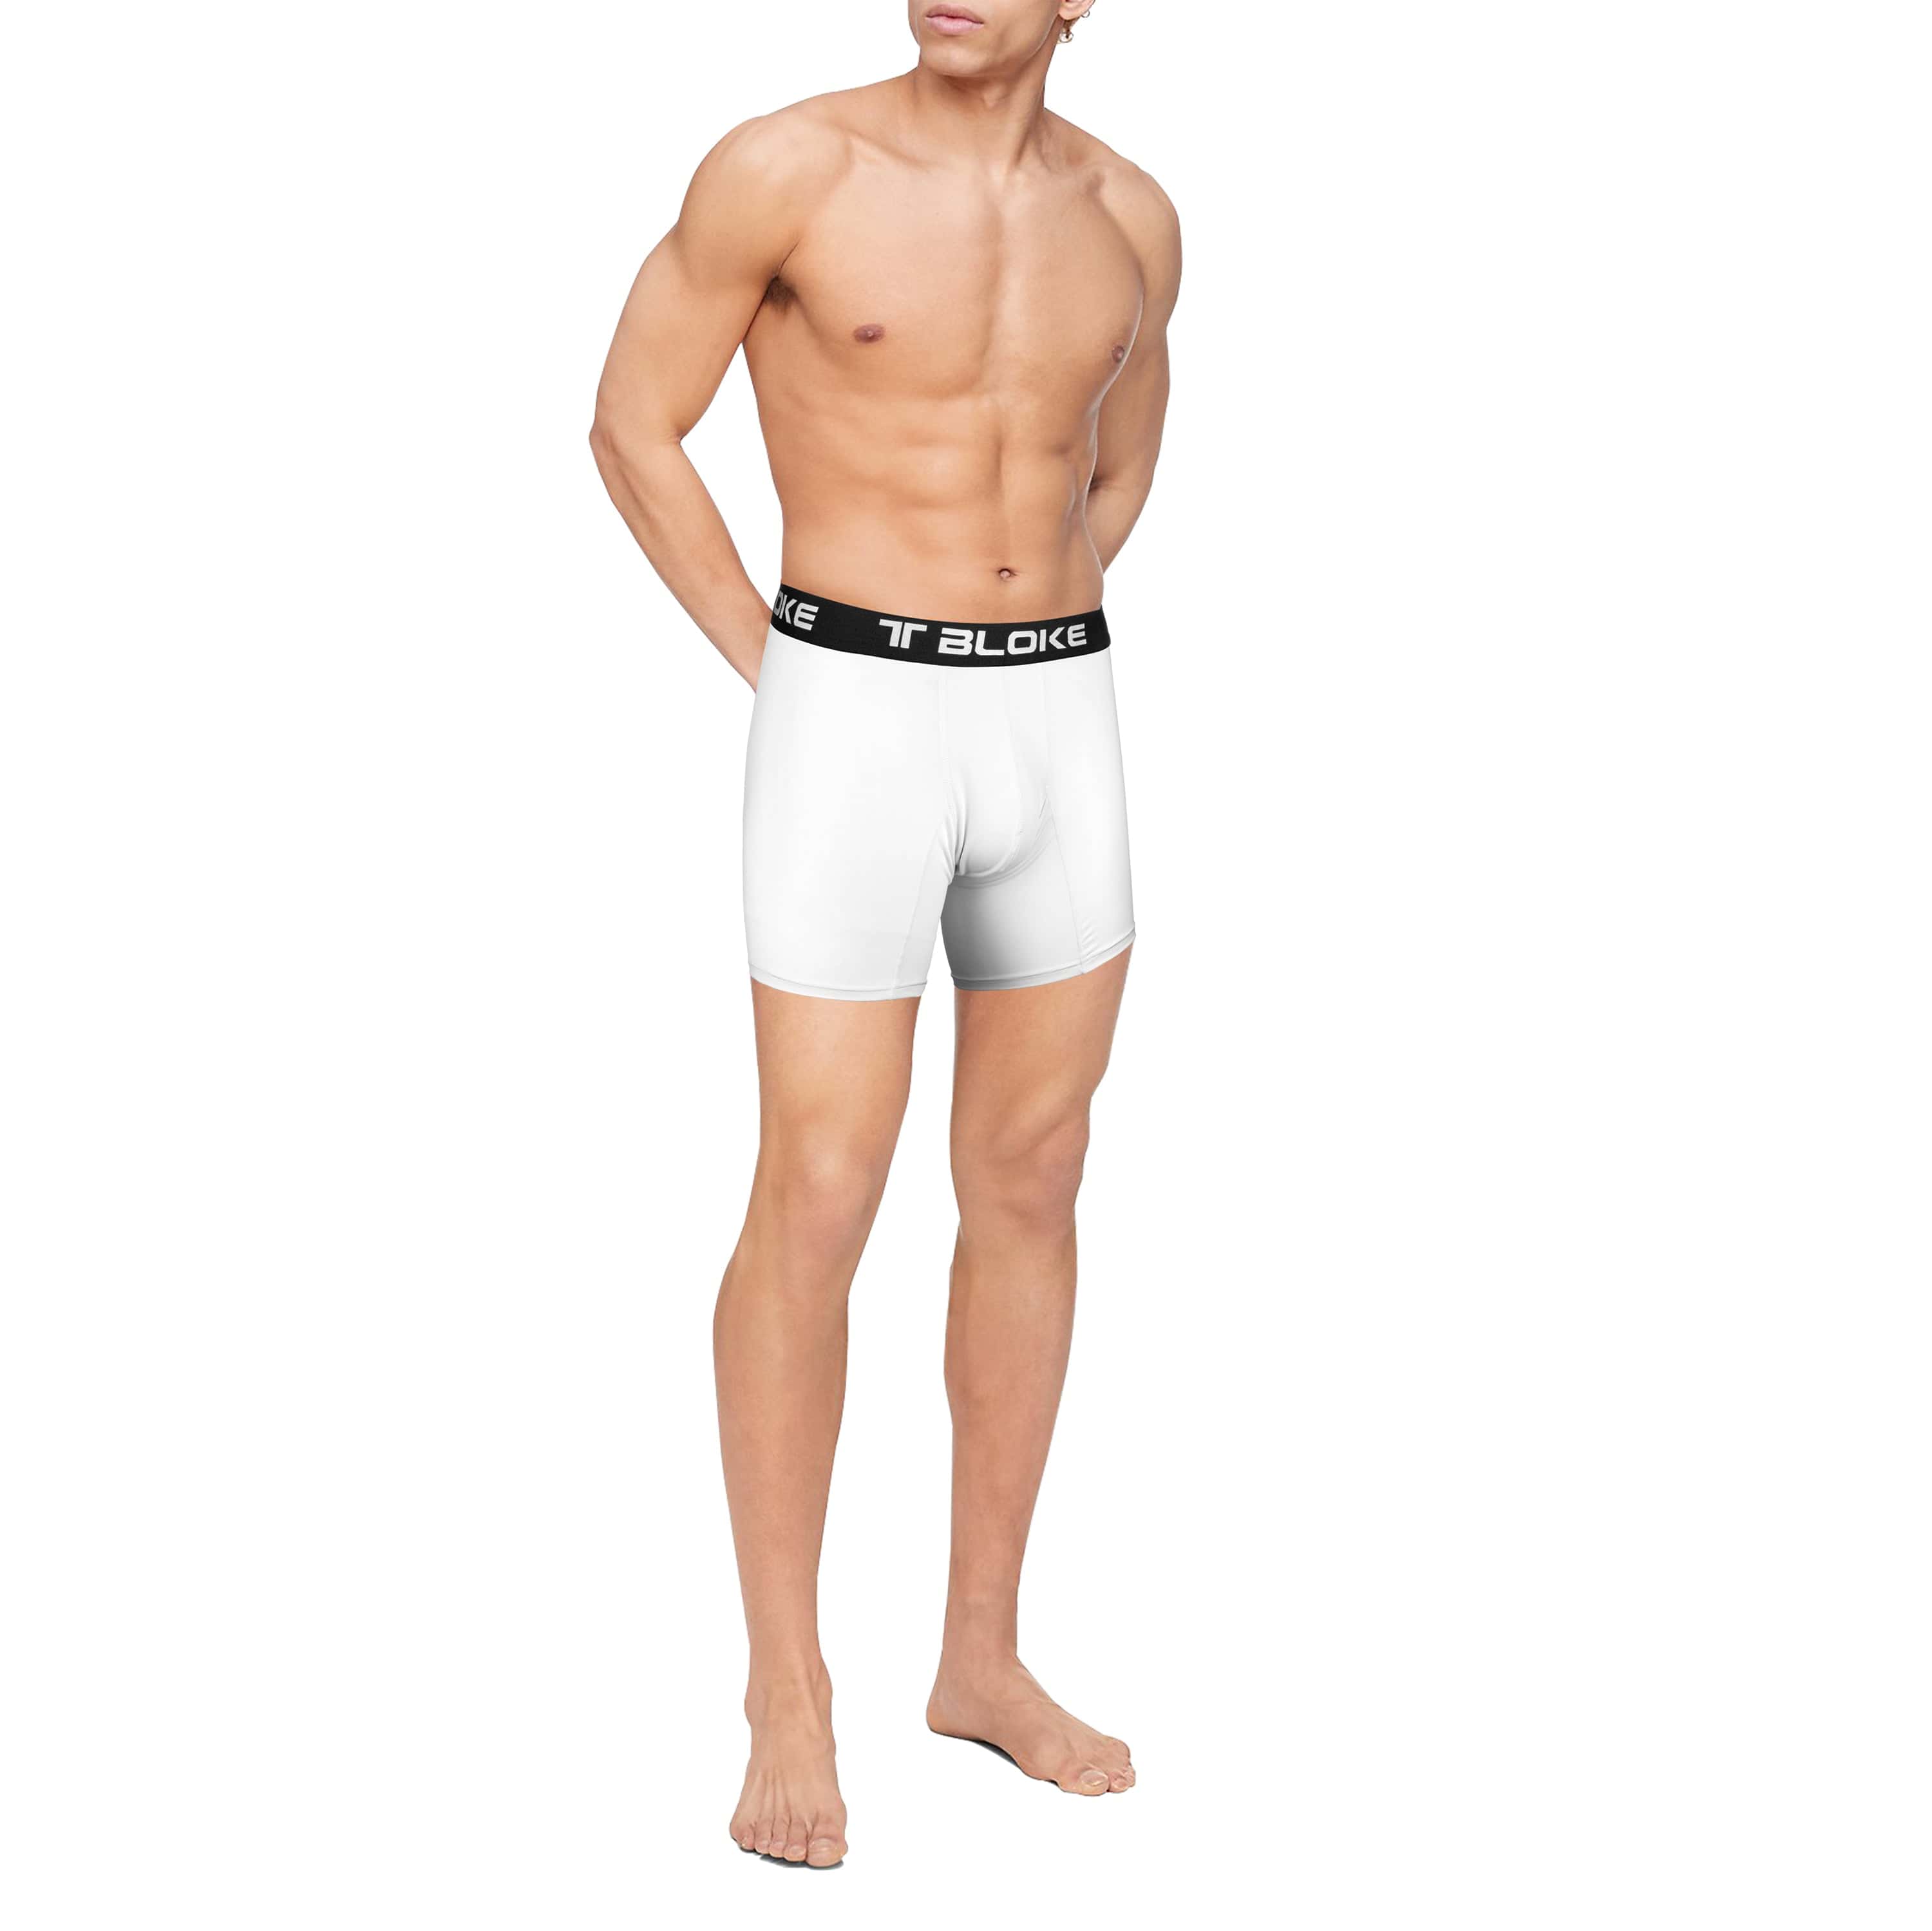 TBO, Underwear & Socks, Tbo Mens White Boxer Brief